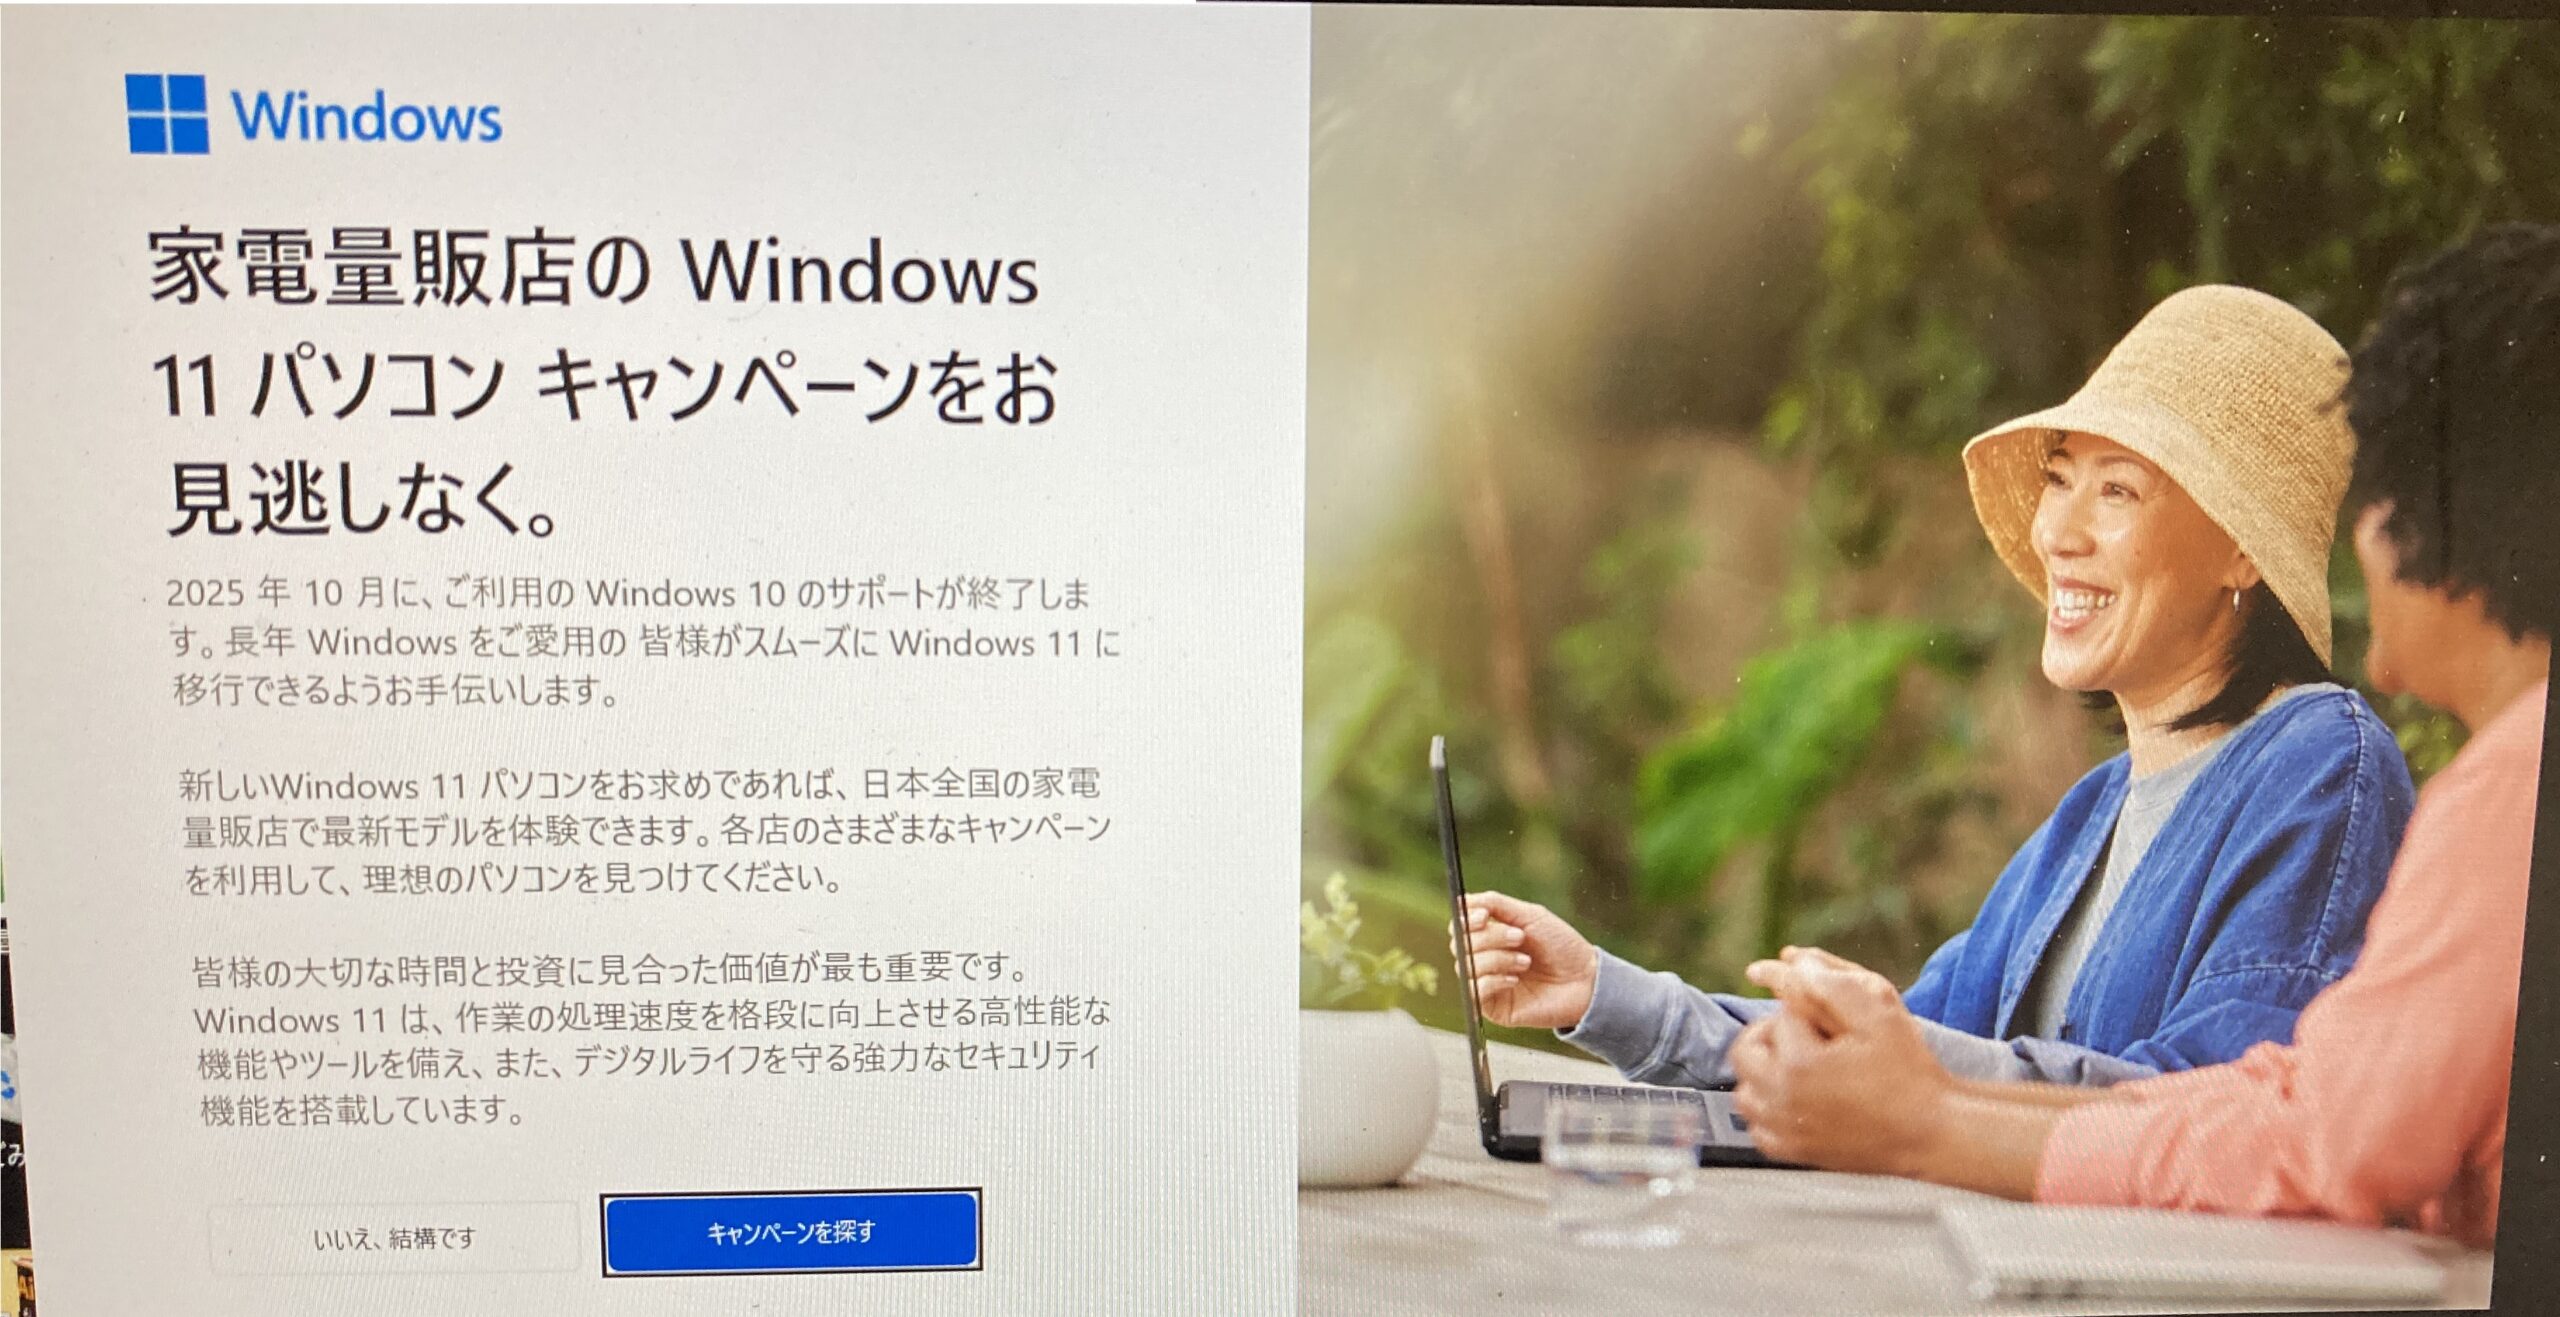 Windows10ユーザーのパソコンにWindows11への移行やWindows11のパソコンへの買い替えを勧める広告が出るようになった